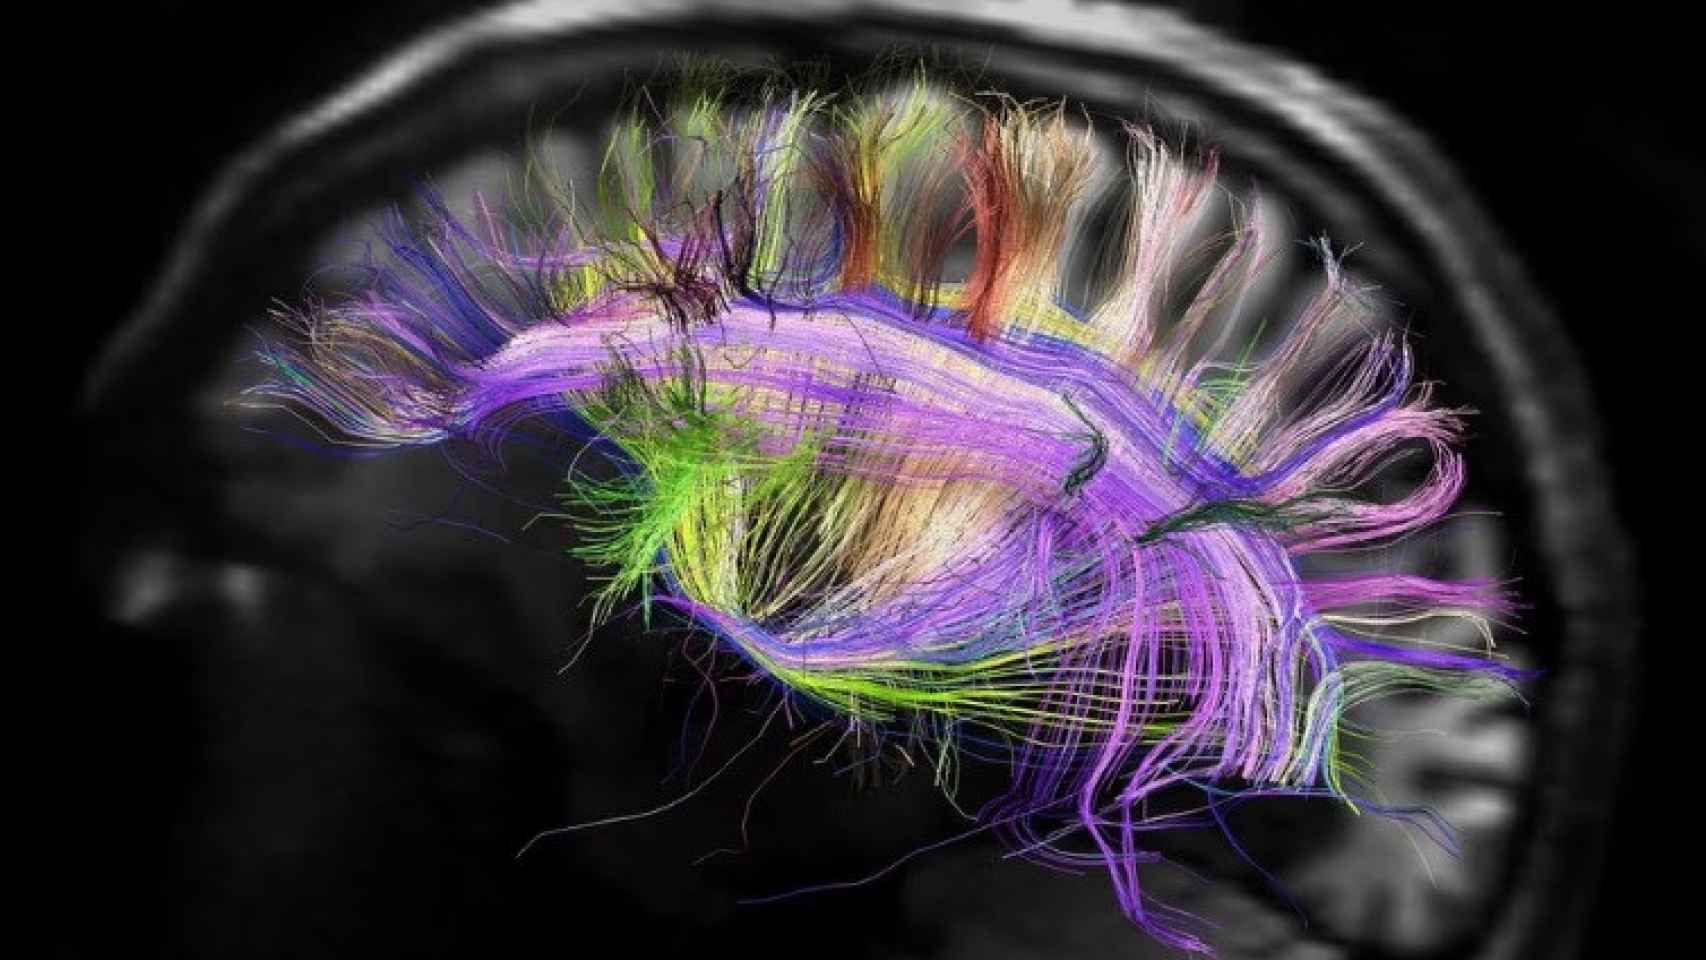 Imagen de una resonancia magnética del cerebro humano.